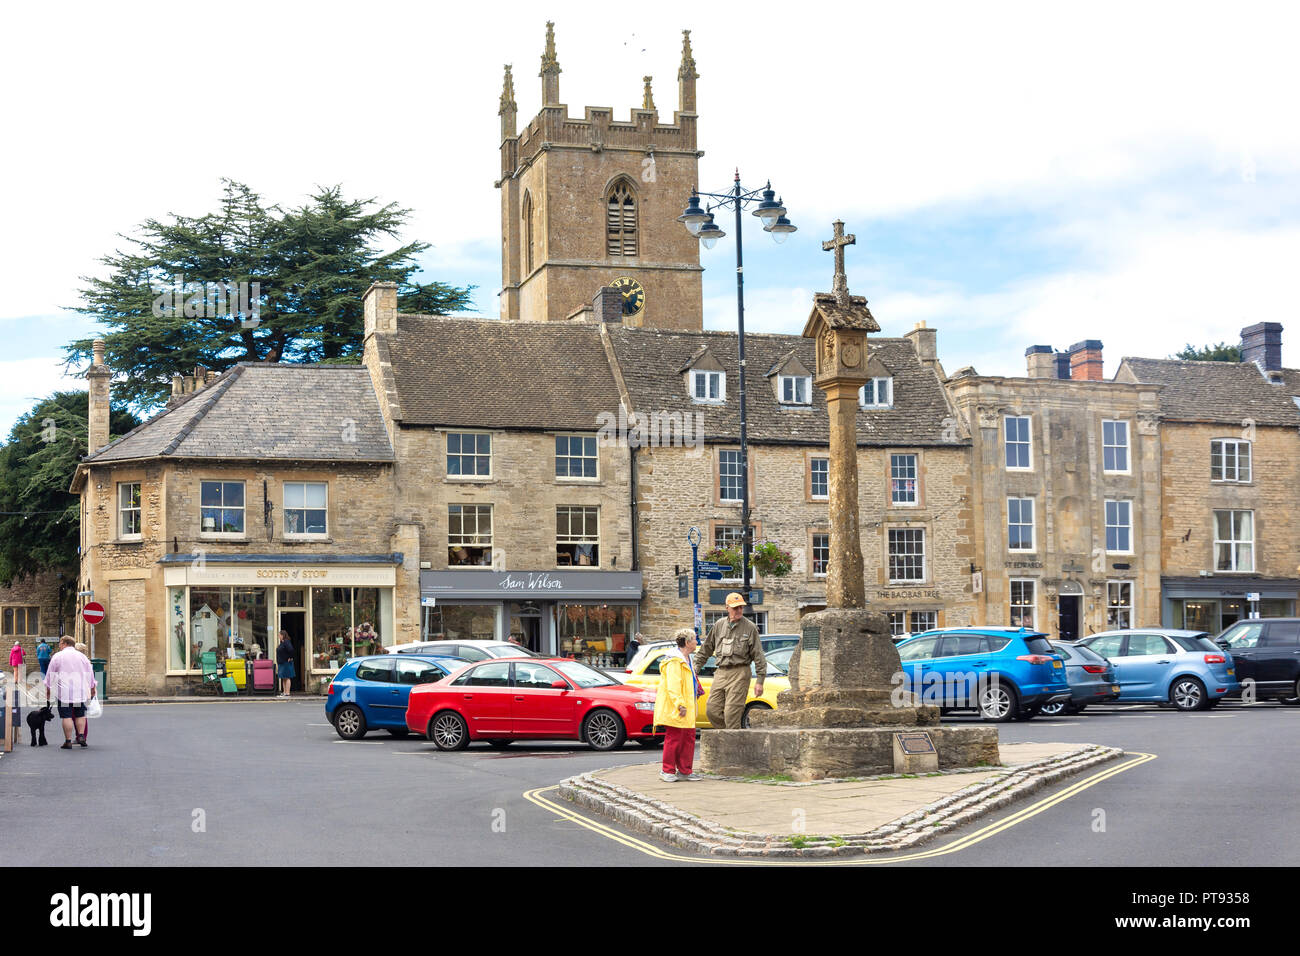 Croix-rouge et du Marché St Edward's tour de l'Église, Place du marché, Stow-on-the-Wold, Gloucestershire, Angleterre, Royaume-Uni Banque D'Images